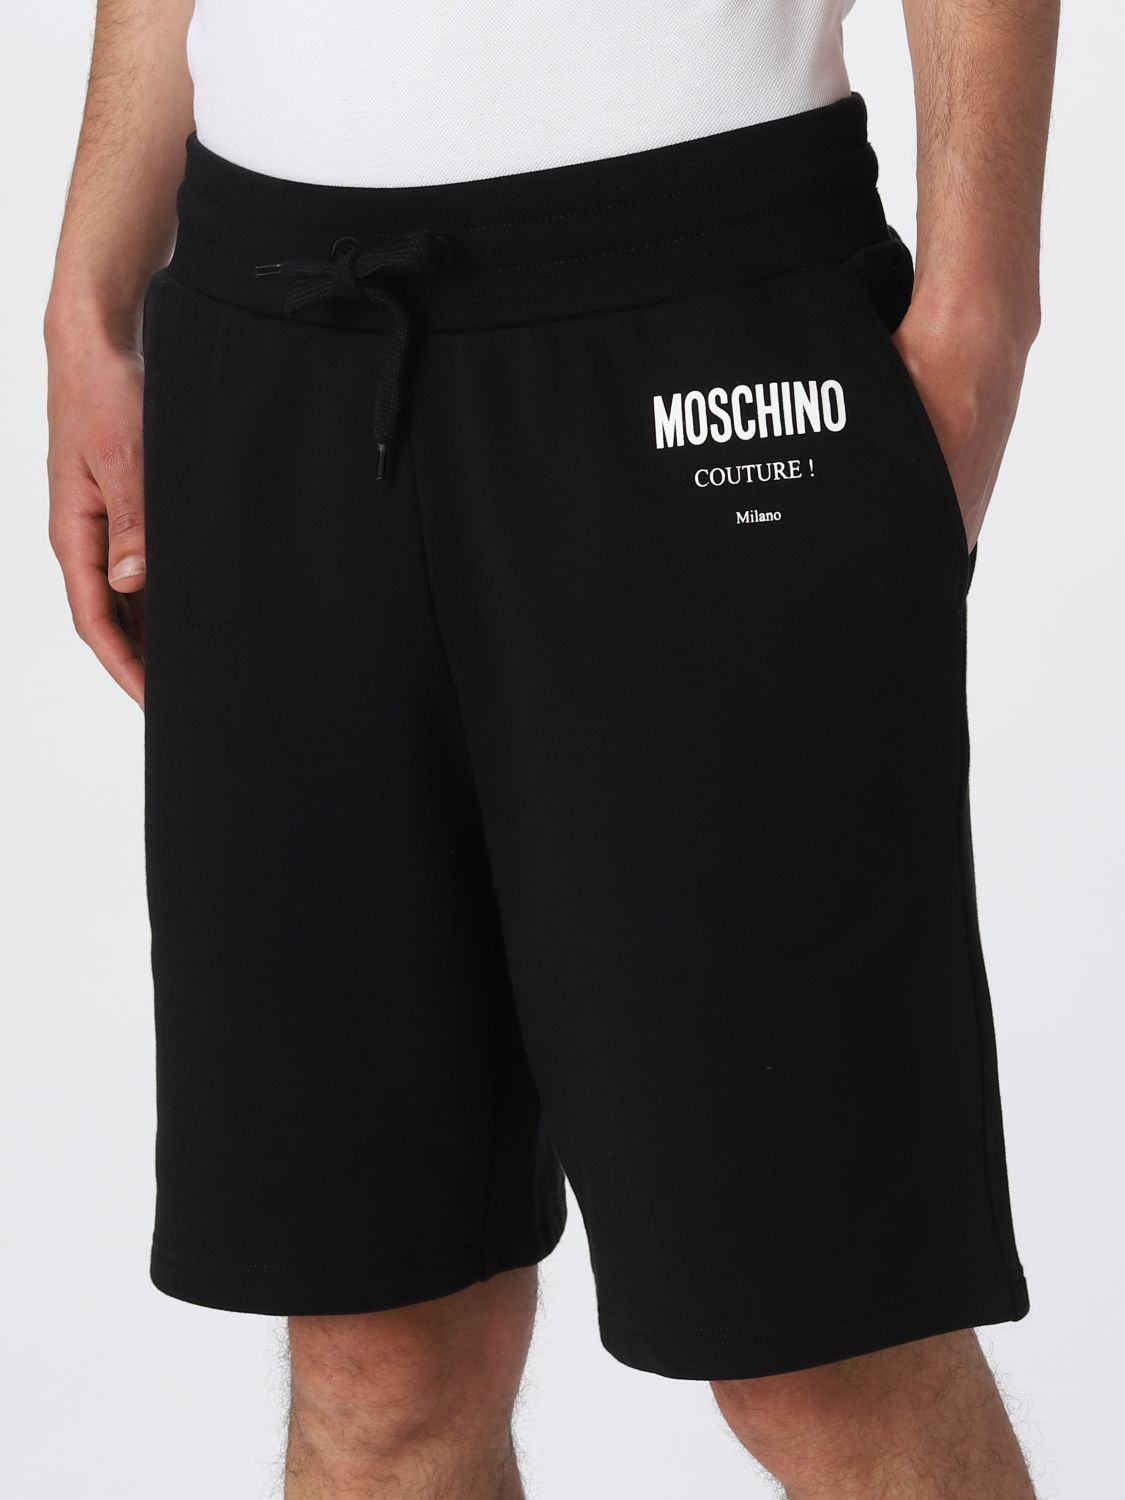 Short Moschino Couture: Short Moschino Couture homme noir 4